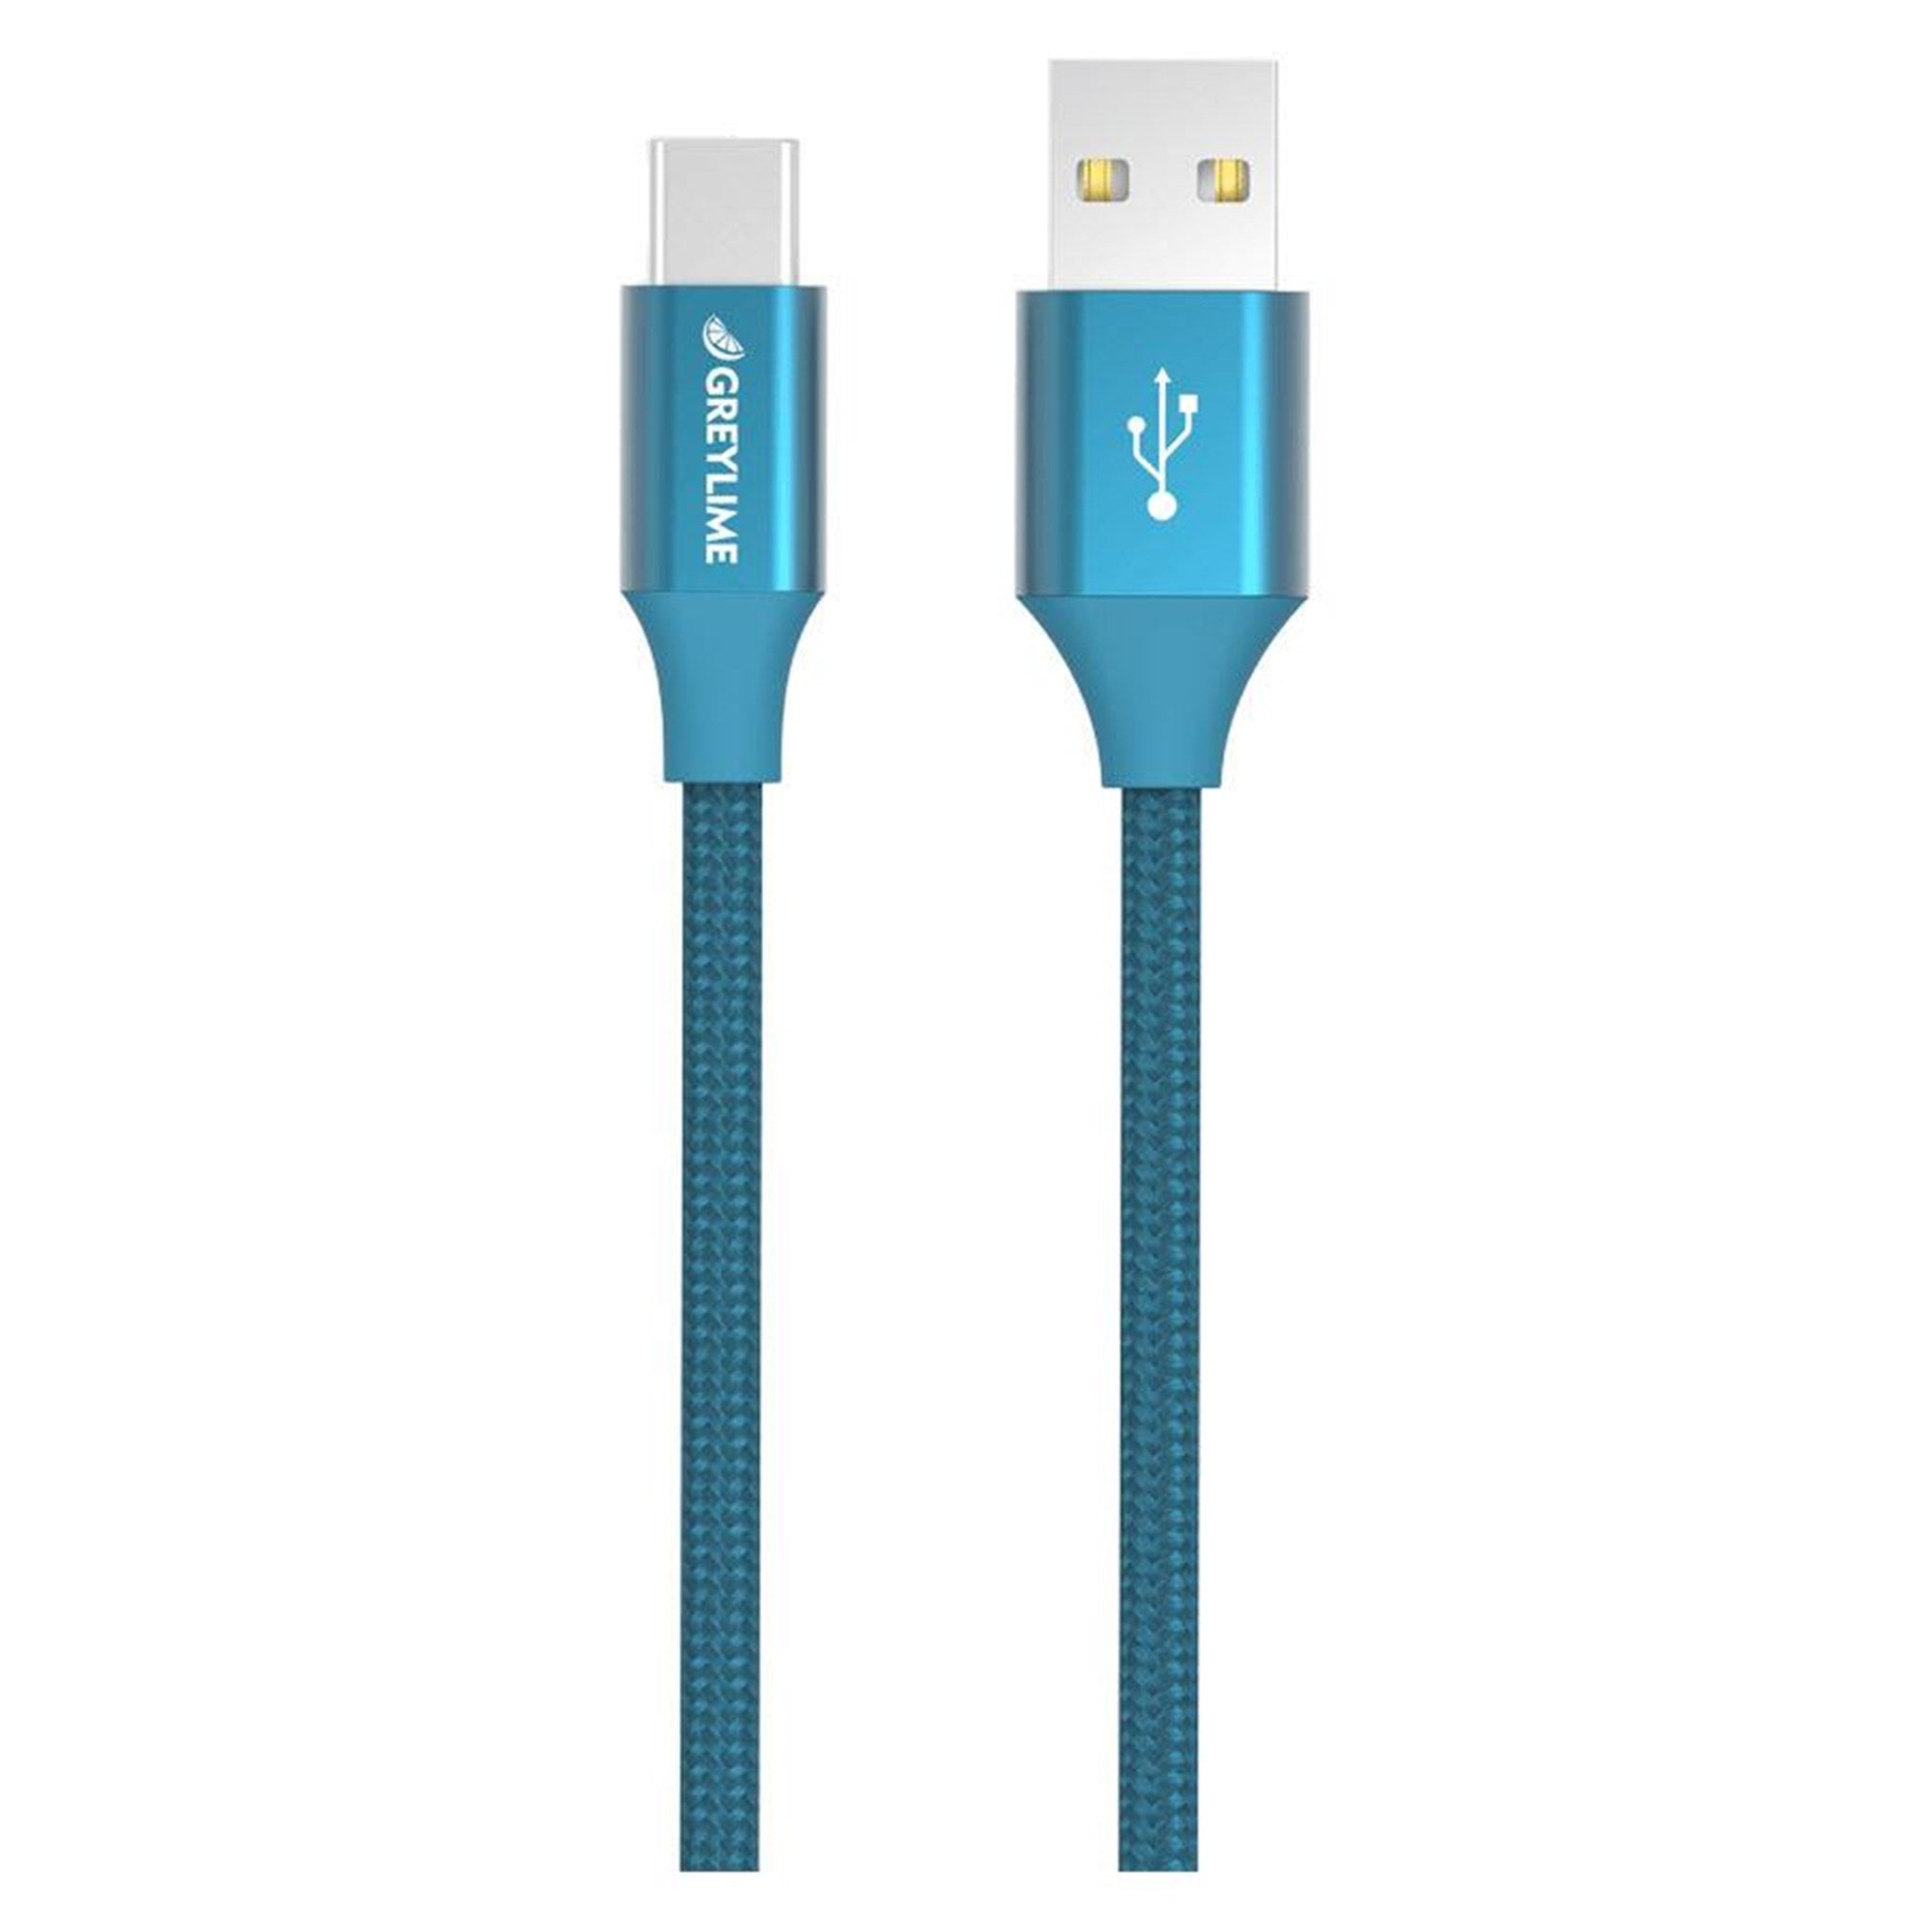 Billede af GreyLime Braided USB-A til USB-C Kabel Blå 2 m hos Balar